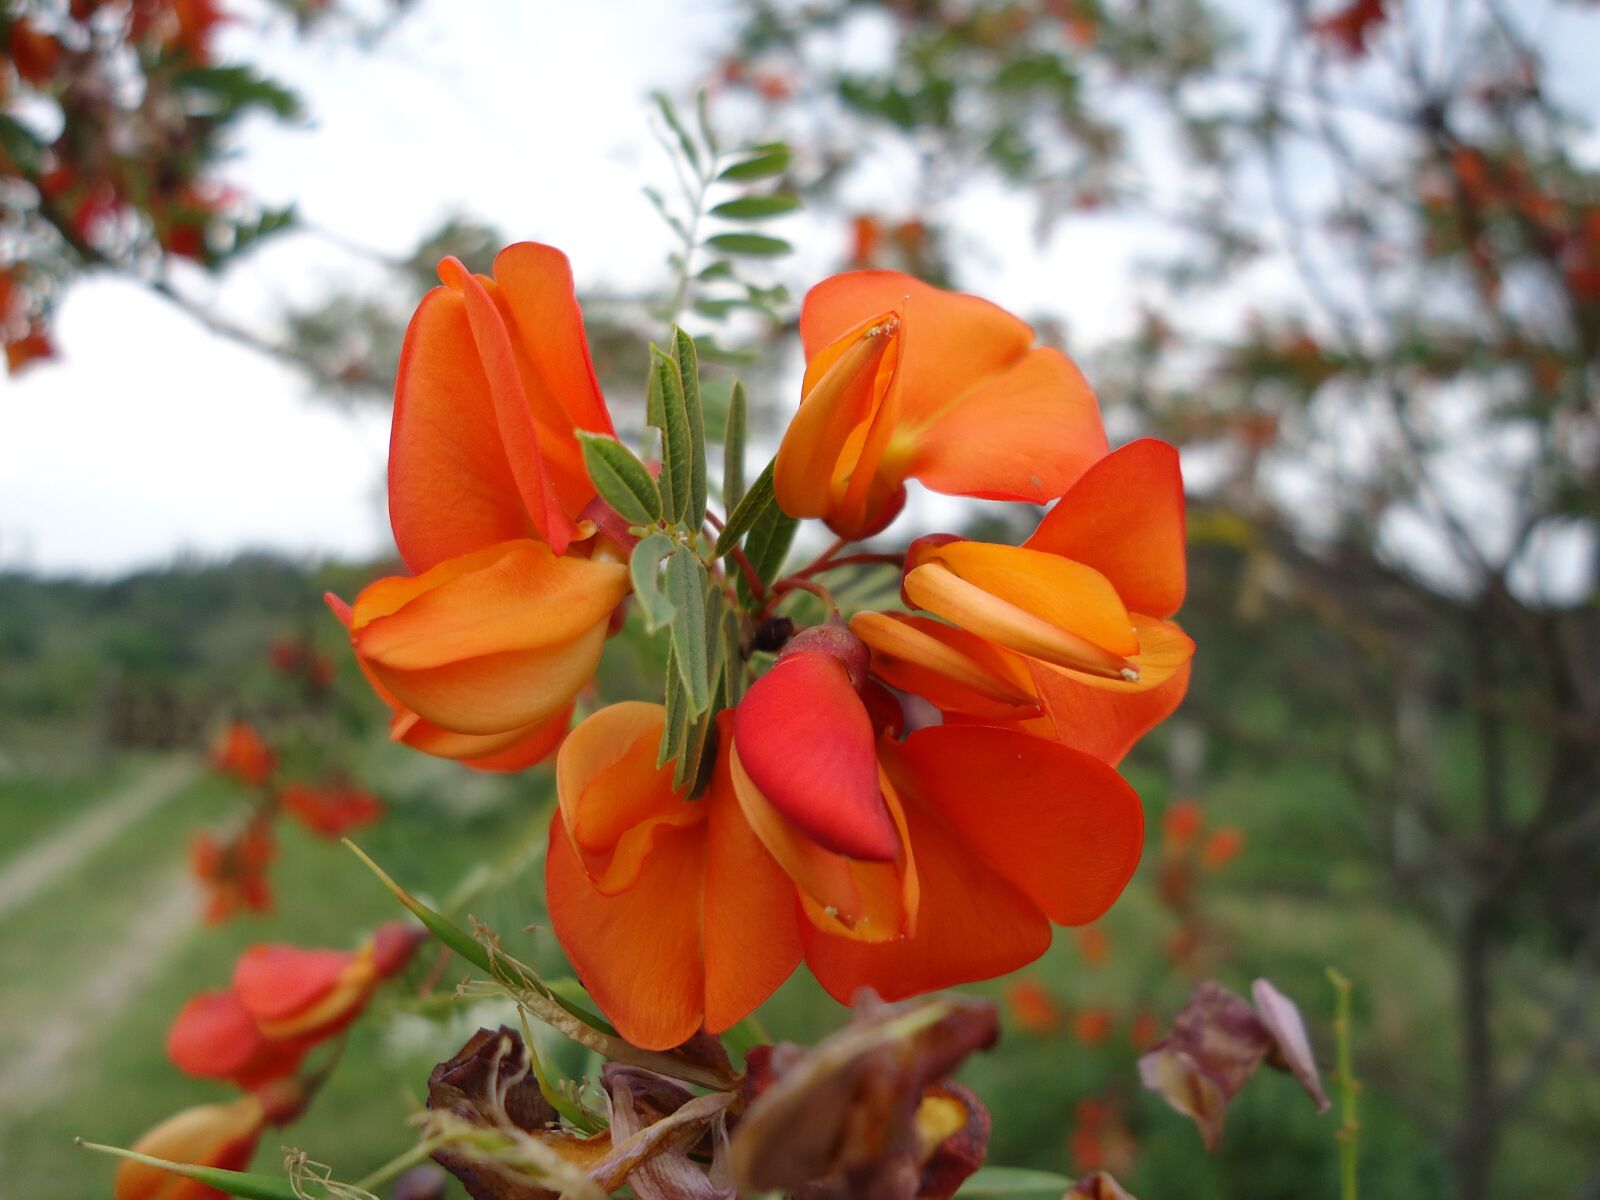 Sony Cyber-shot DSC-W610 sample photo. Flower, orange, petal photography